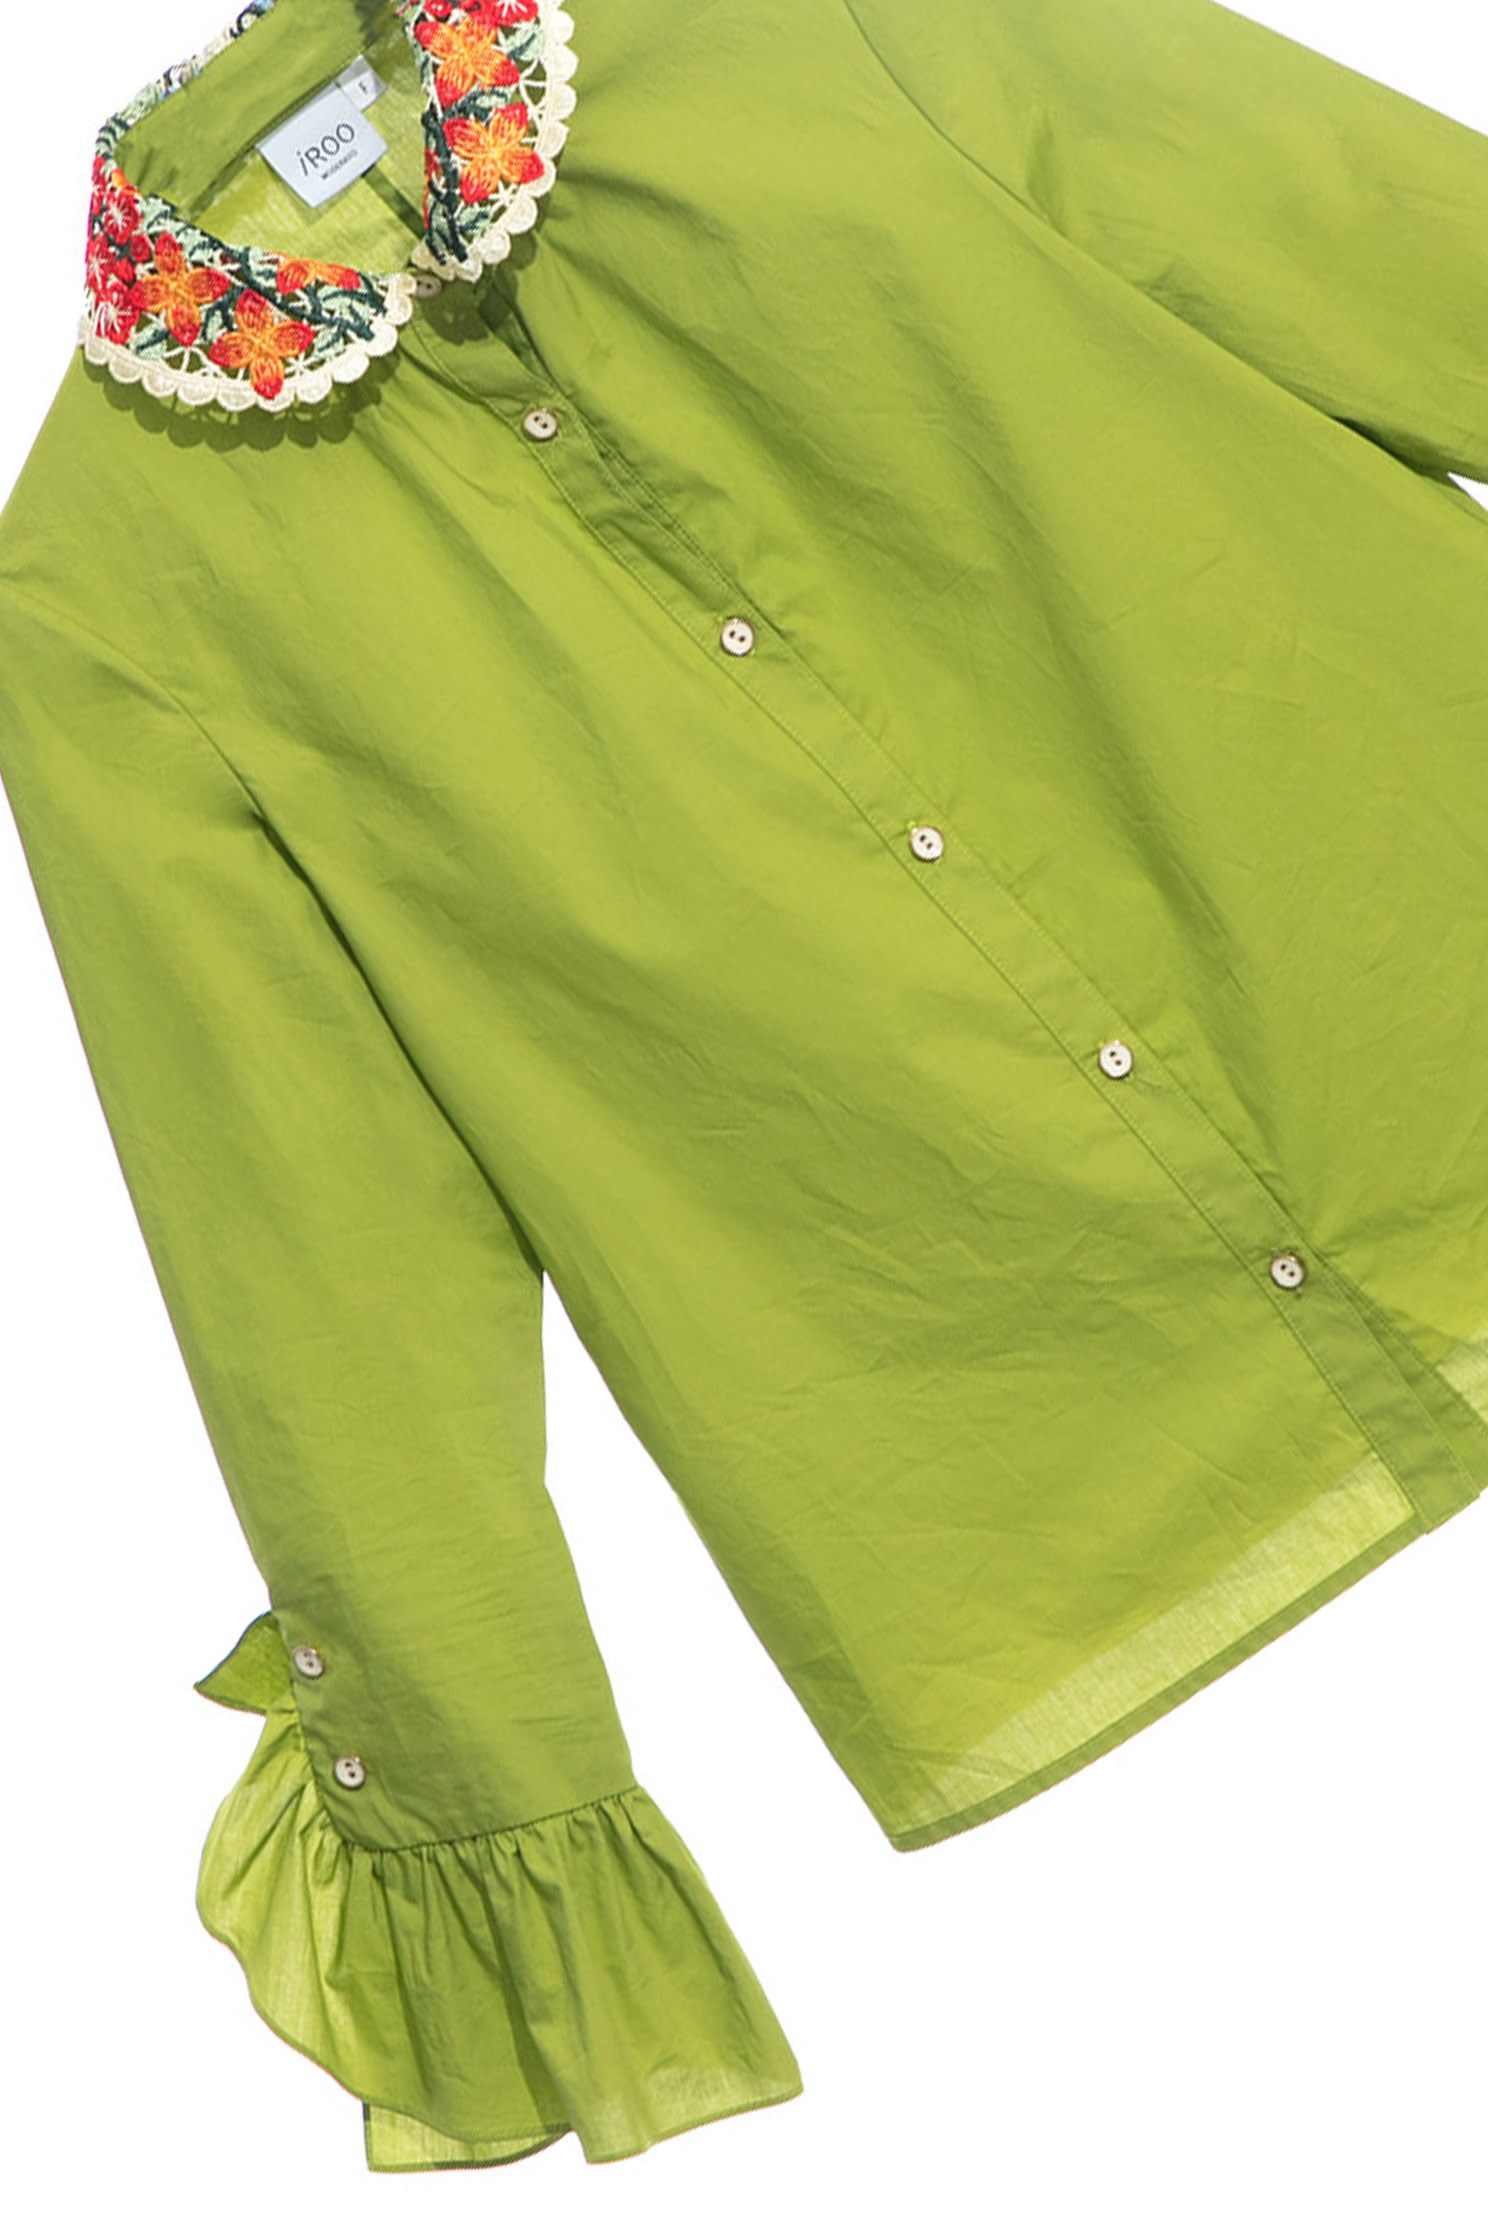 莫格薄荷綠單品上衣,長袖 上衣,綠色 上衣,翻領 上衣莫格薄荷綠單品上衣,上衣,刺繡,春夏穿搭,約會特輯